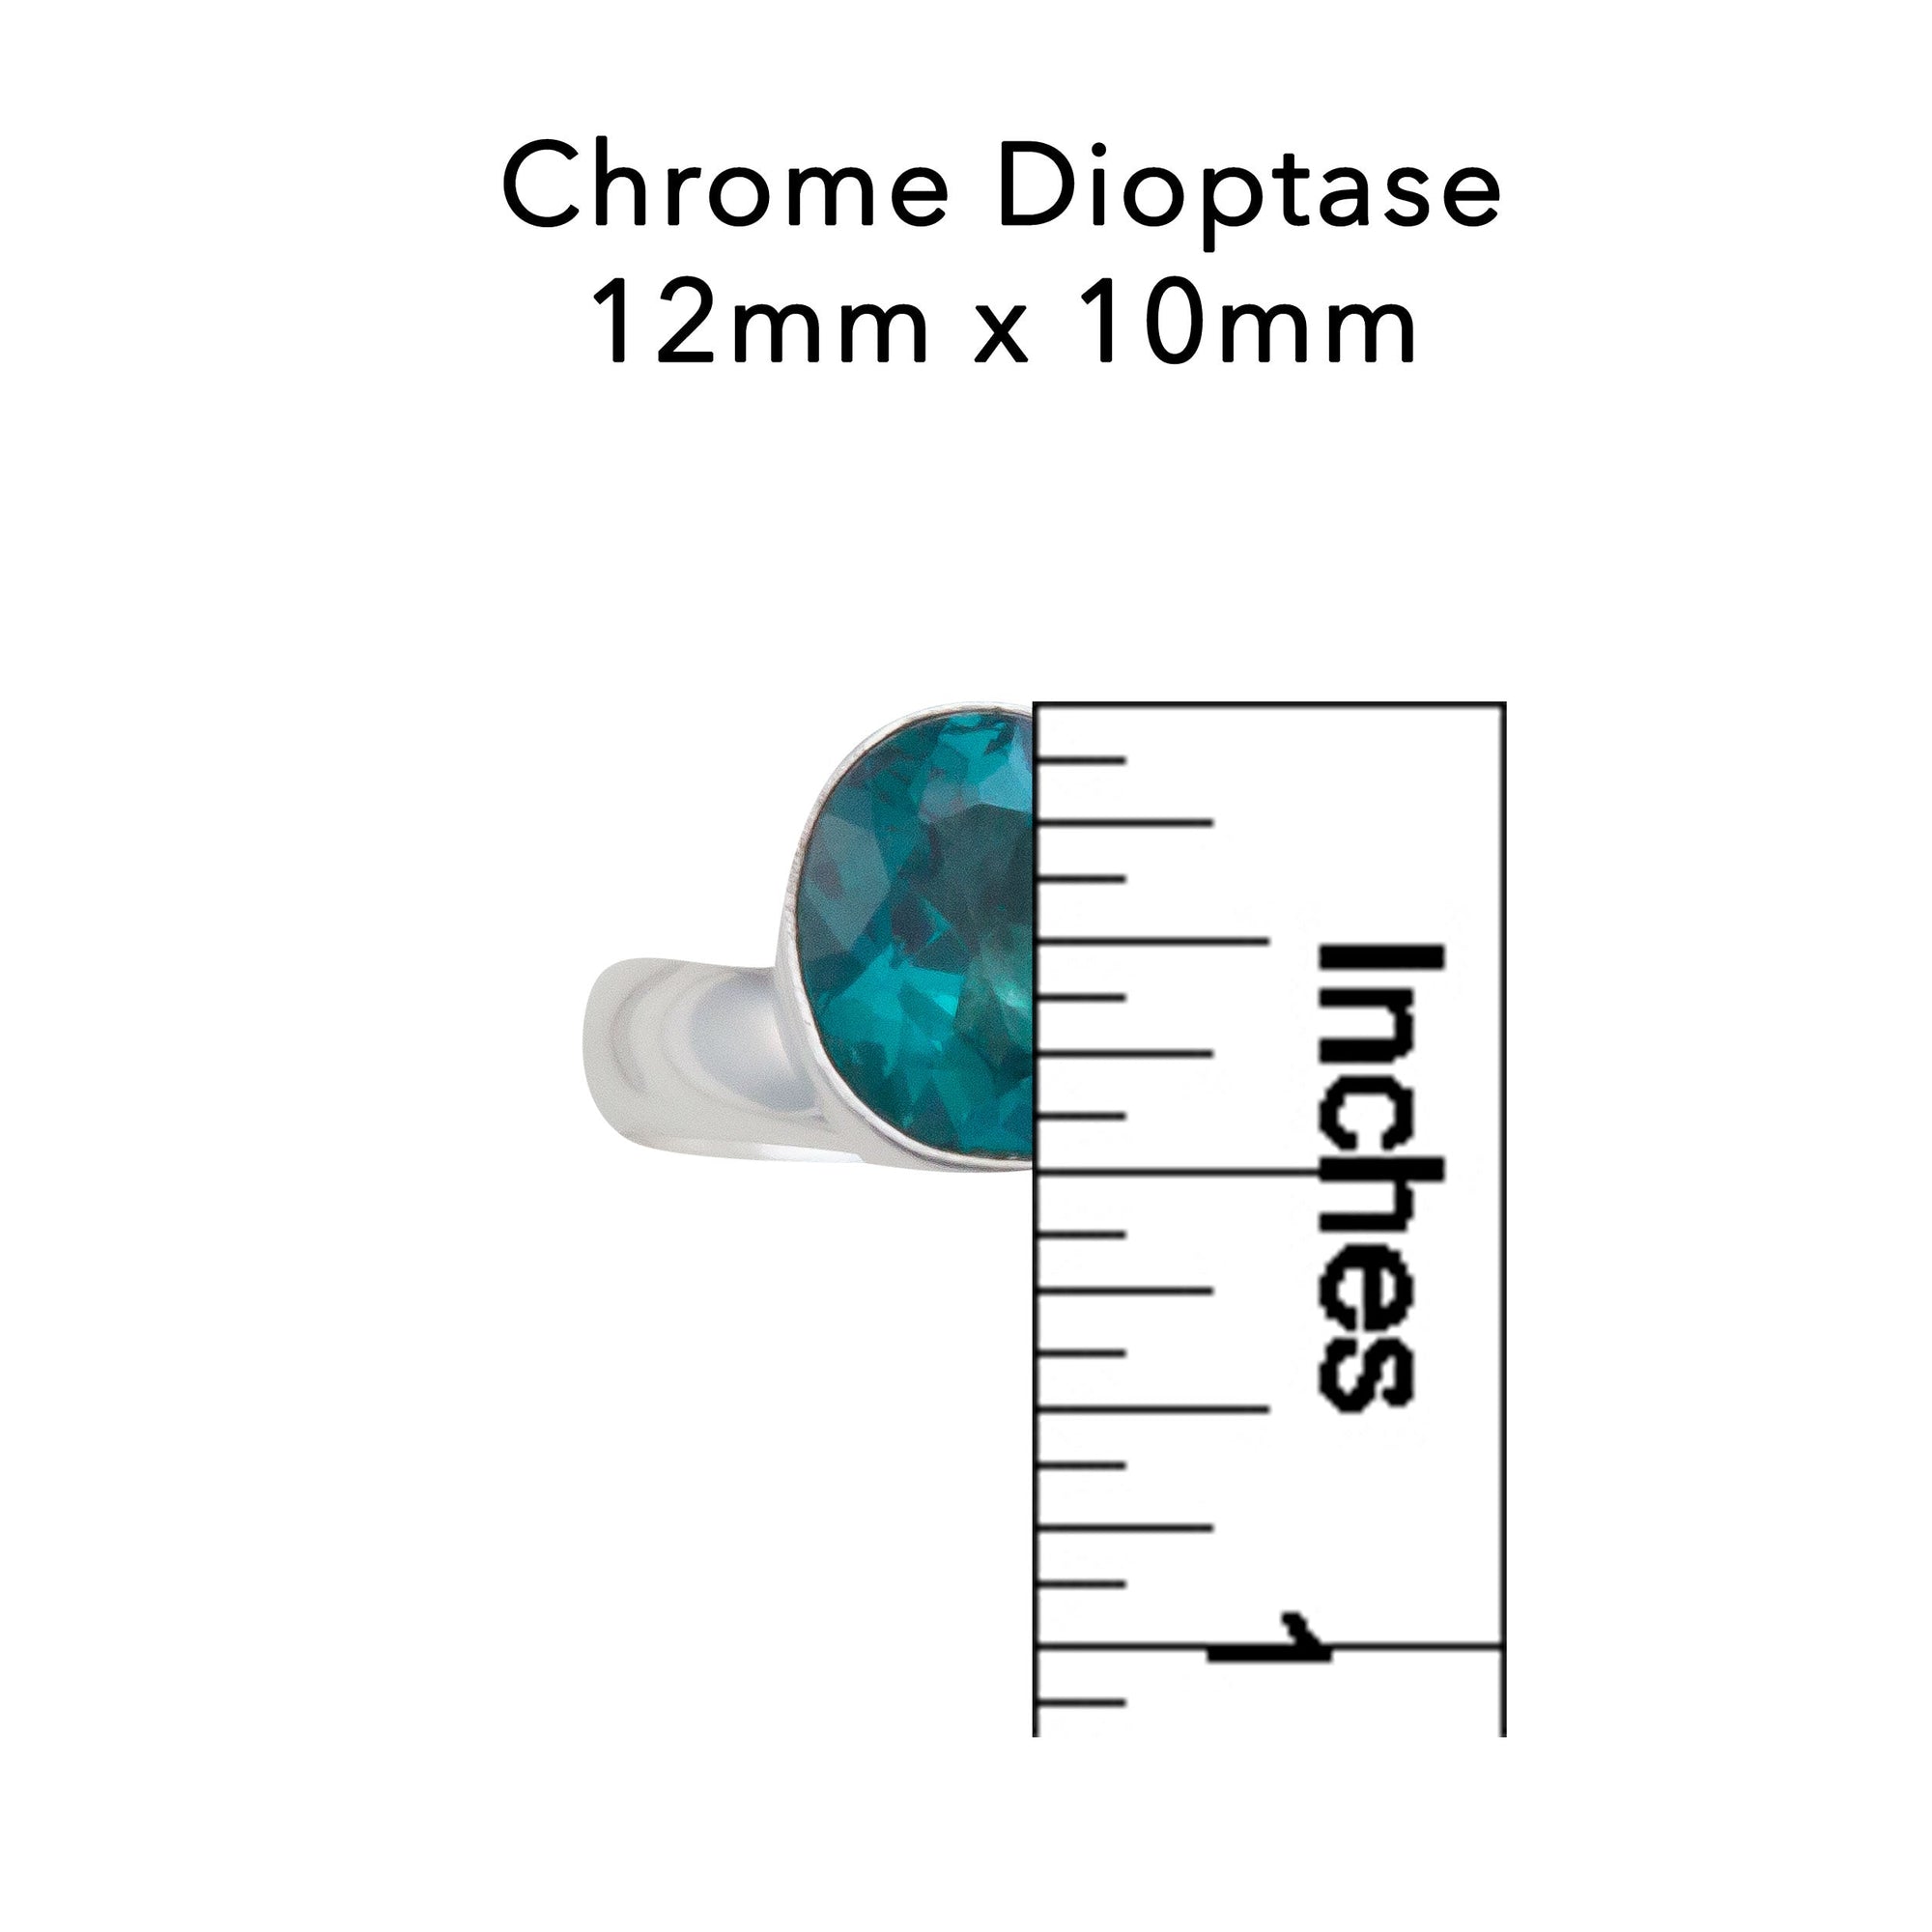 Sterling Silver Chrome Dioptase Adjustable Ring | Charles Albert JewelrySterling Silver Chrome Diopside Adjustable Ring | Charles Albert Jewelry